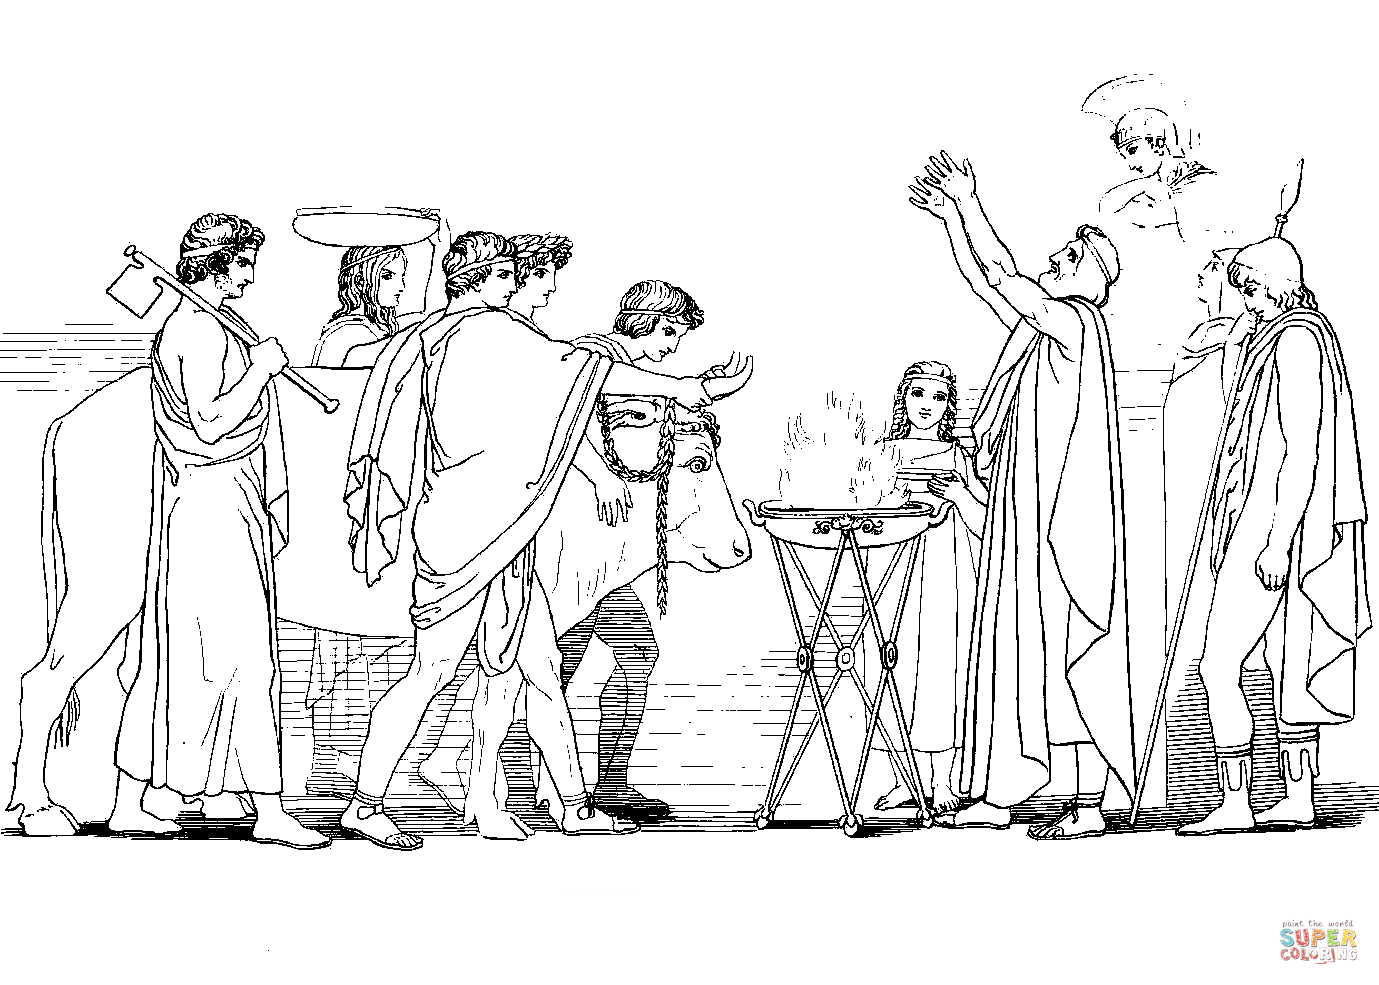 Джон Флаксман иллюстрации к Илиаде